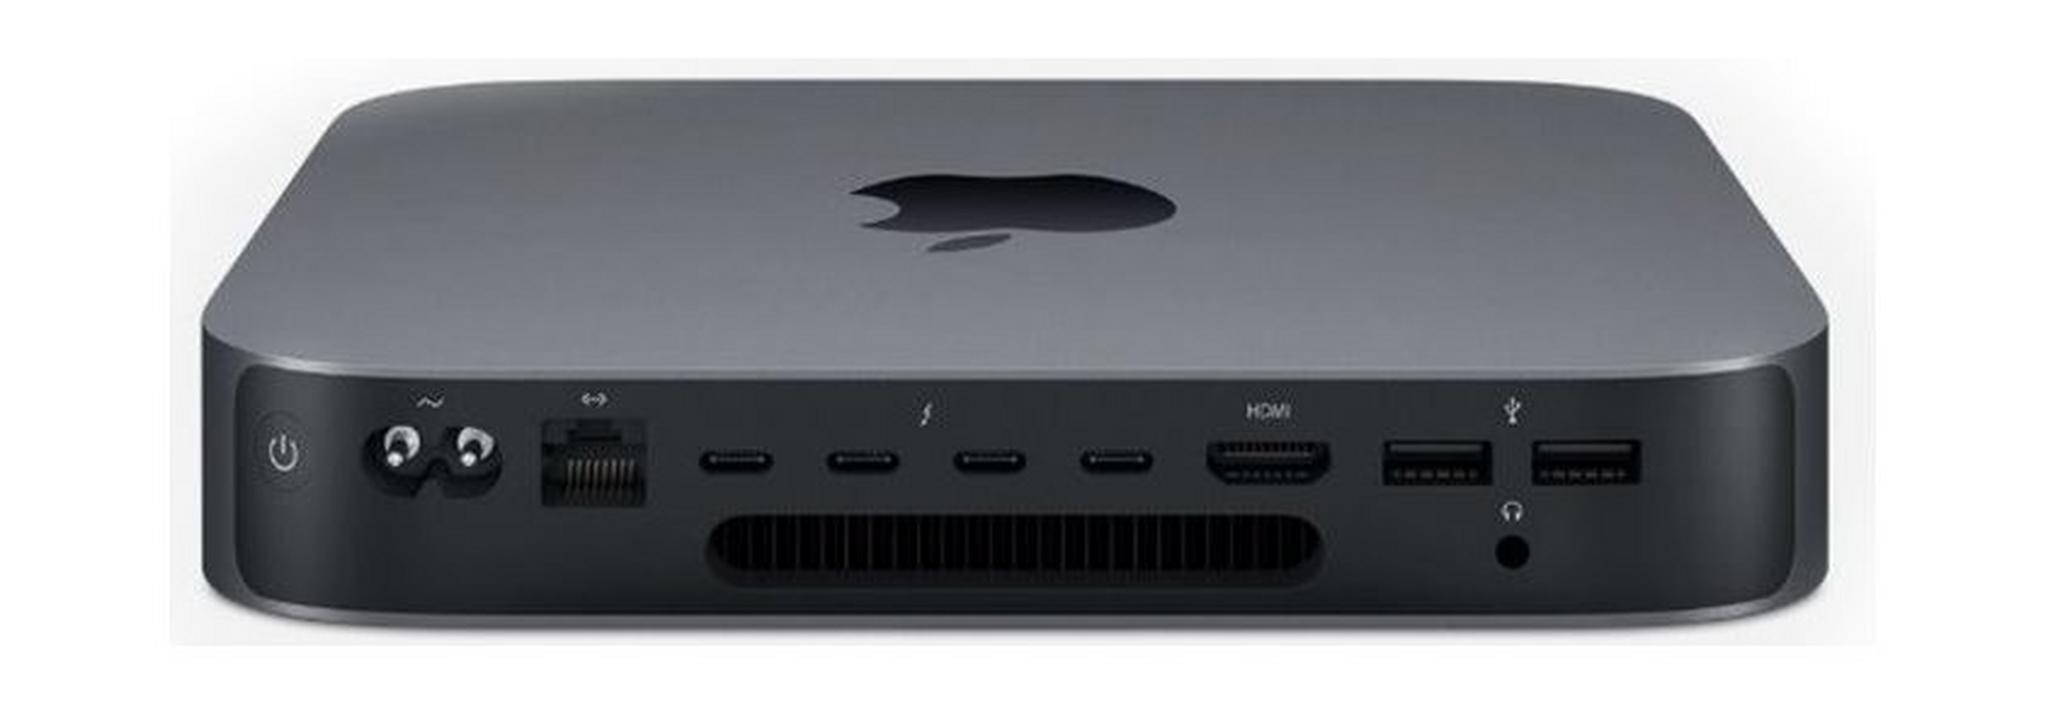 Apple Mac Mini Core i5 8GB RAM 512GB SSD Desktop - (MXNG2AB/A)